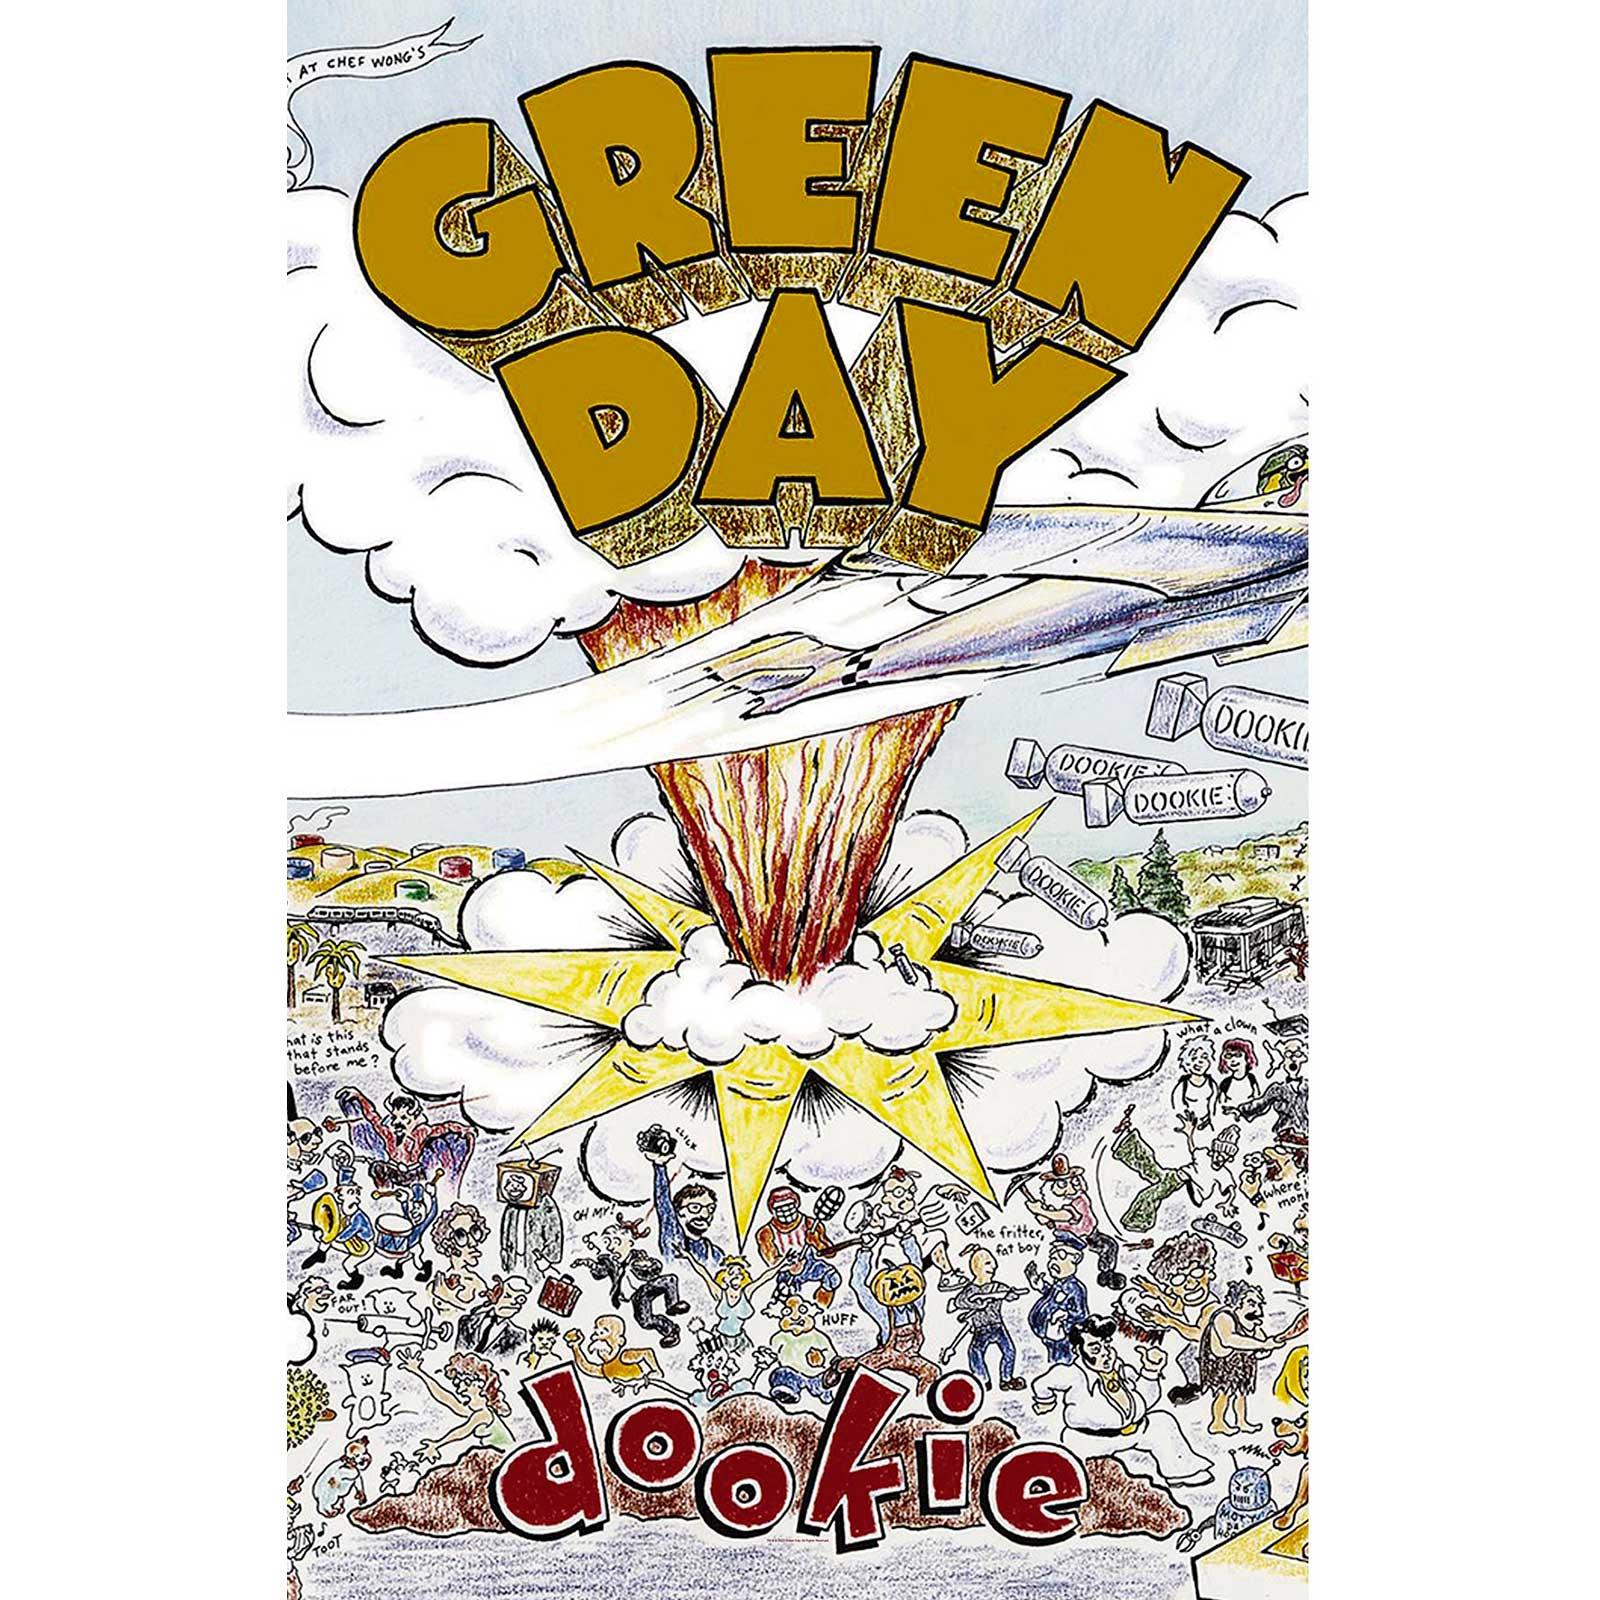 (グリーン・デイ) Green Day オフィシャル商品 Dookie テキスタイルポスター 布製 ポスター 【海外通販】